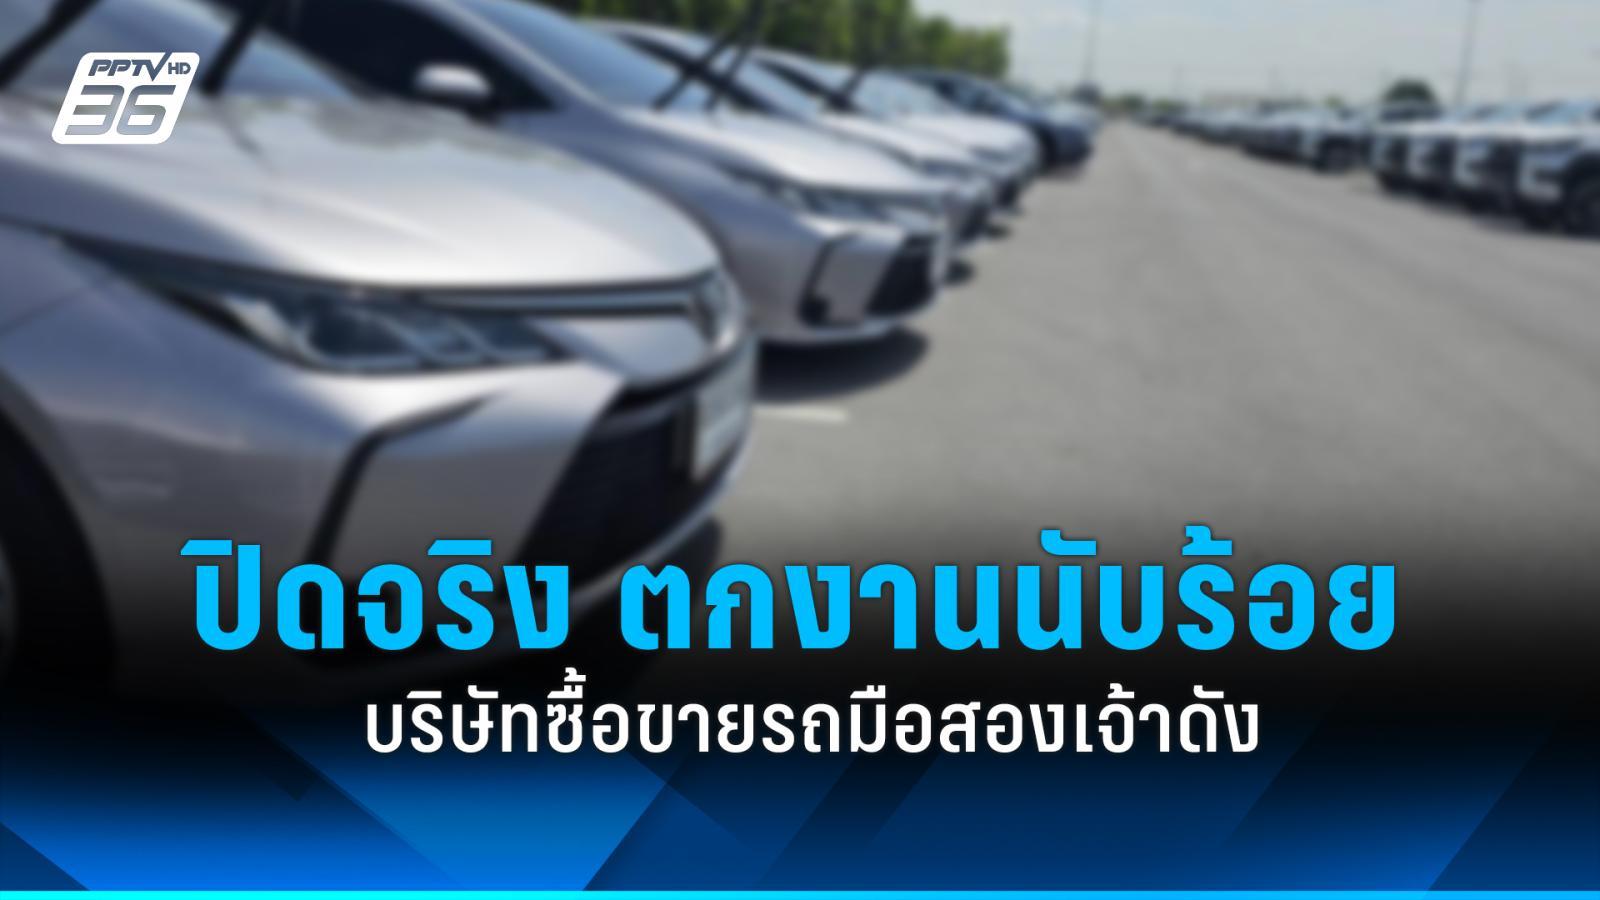 ปิดจริง บริษัทขายรถมือ 2 ชื่อดัง ทุกสาขาทั่วประเทศไทย